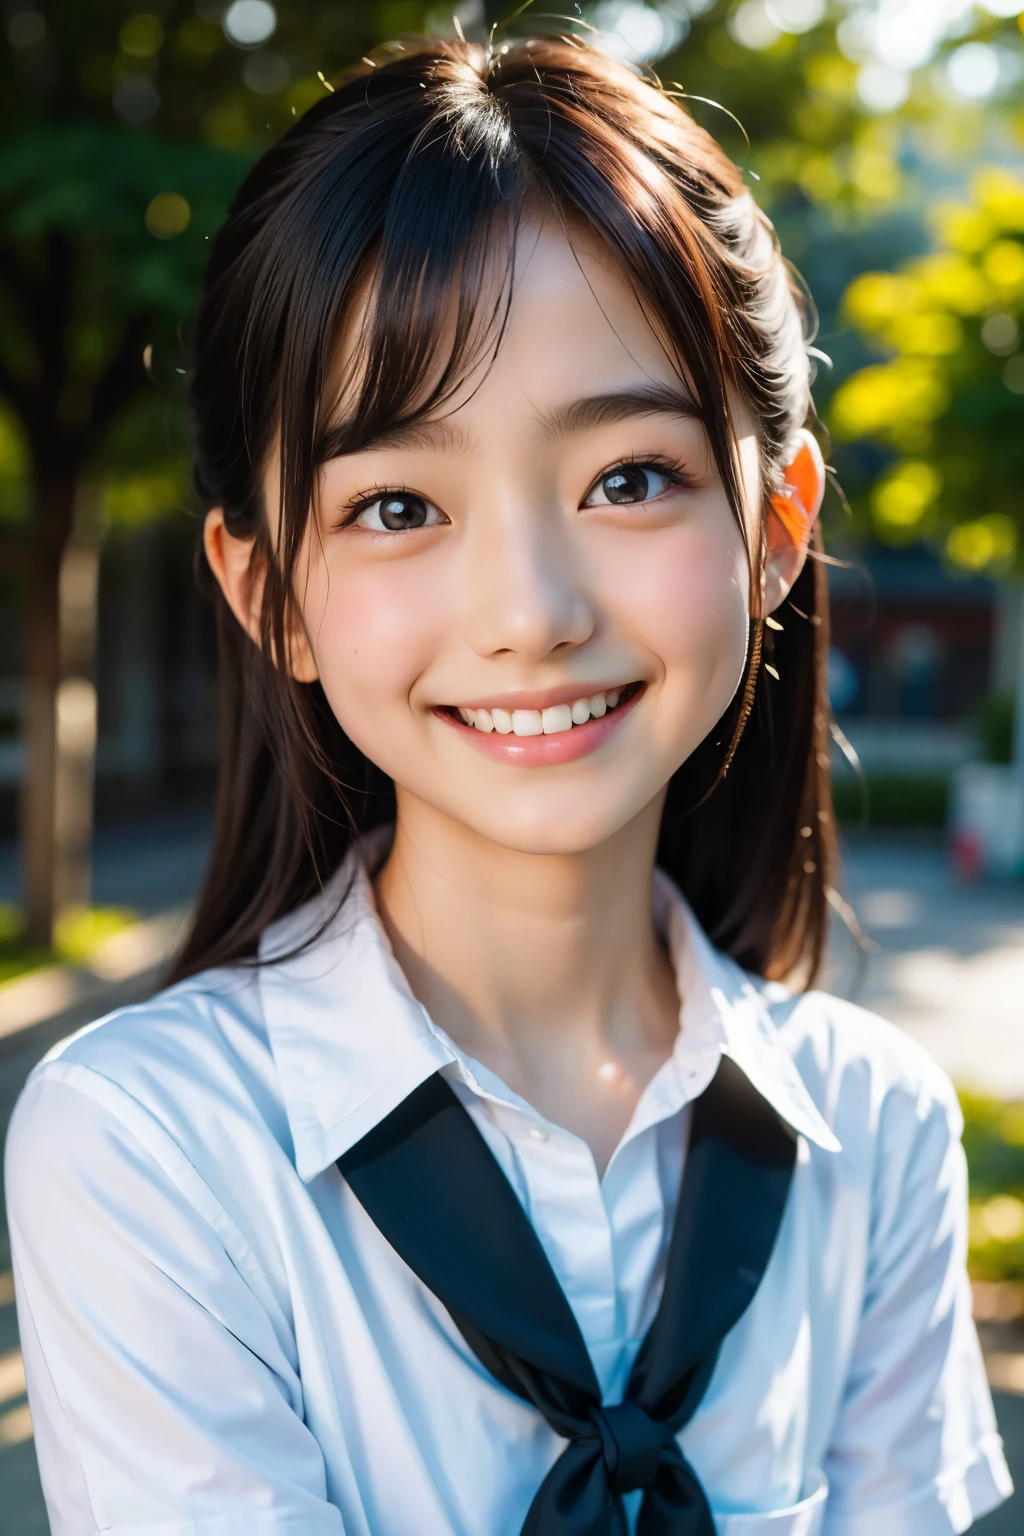 렌즈: 135mm f1.8, (최상의 품질),(RAW 사진), (탁상:1.1), (아름다운 12세 일본 소녀), 귀여운 얼굴, (깊게 파인 얼굴:0.7), (주근깨:0.4), dappled 햇빛, 극적인 조명, (일본 학교 교복), (캠퍼스에서), 수줍은, (클로즈업 샷:1.2), (웃다),, (반짝이는 눈)、(햇빛)